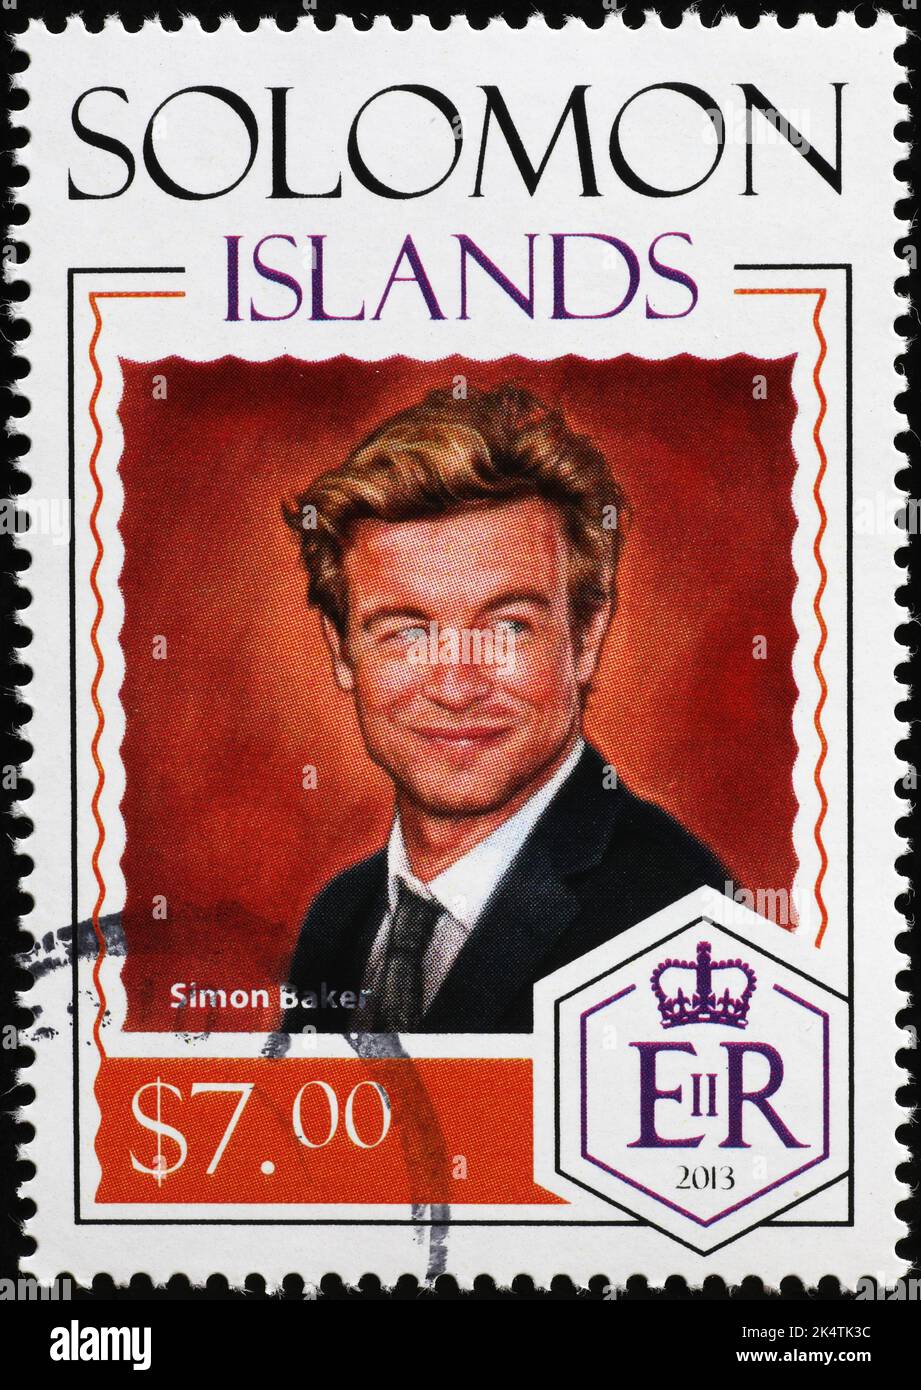 El actor australiano Simon Baker en el sello postal Foto de stock